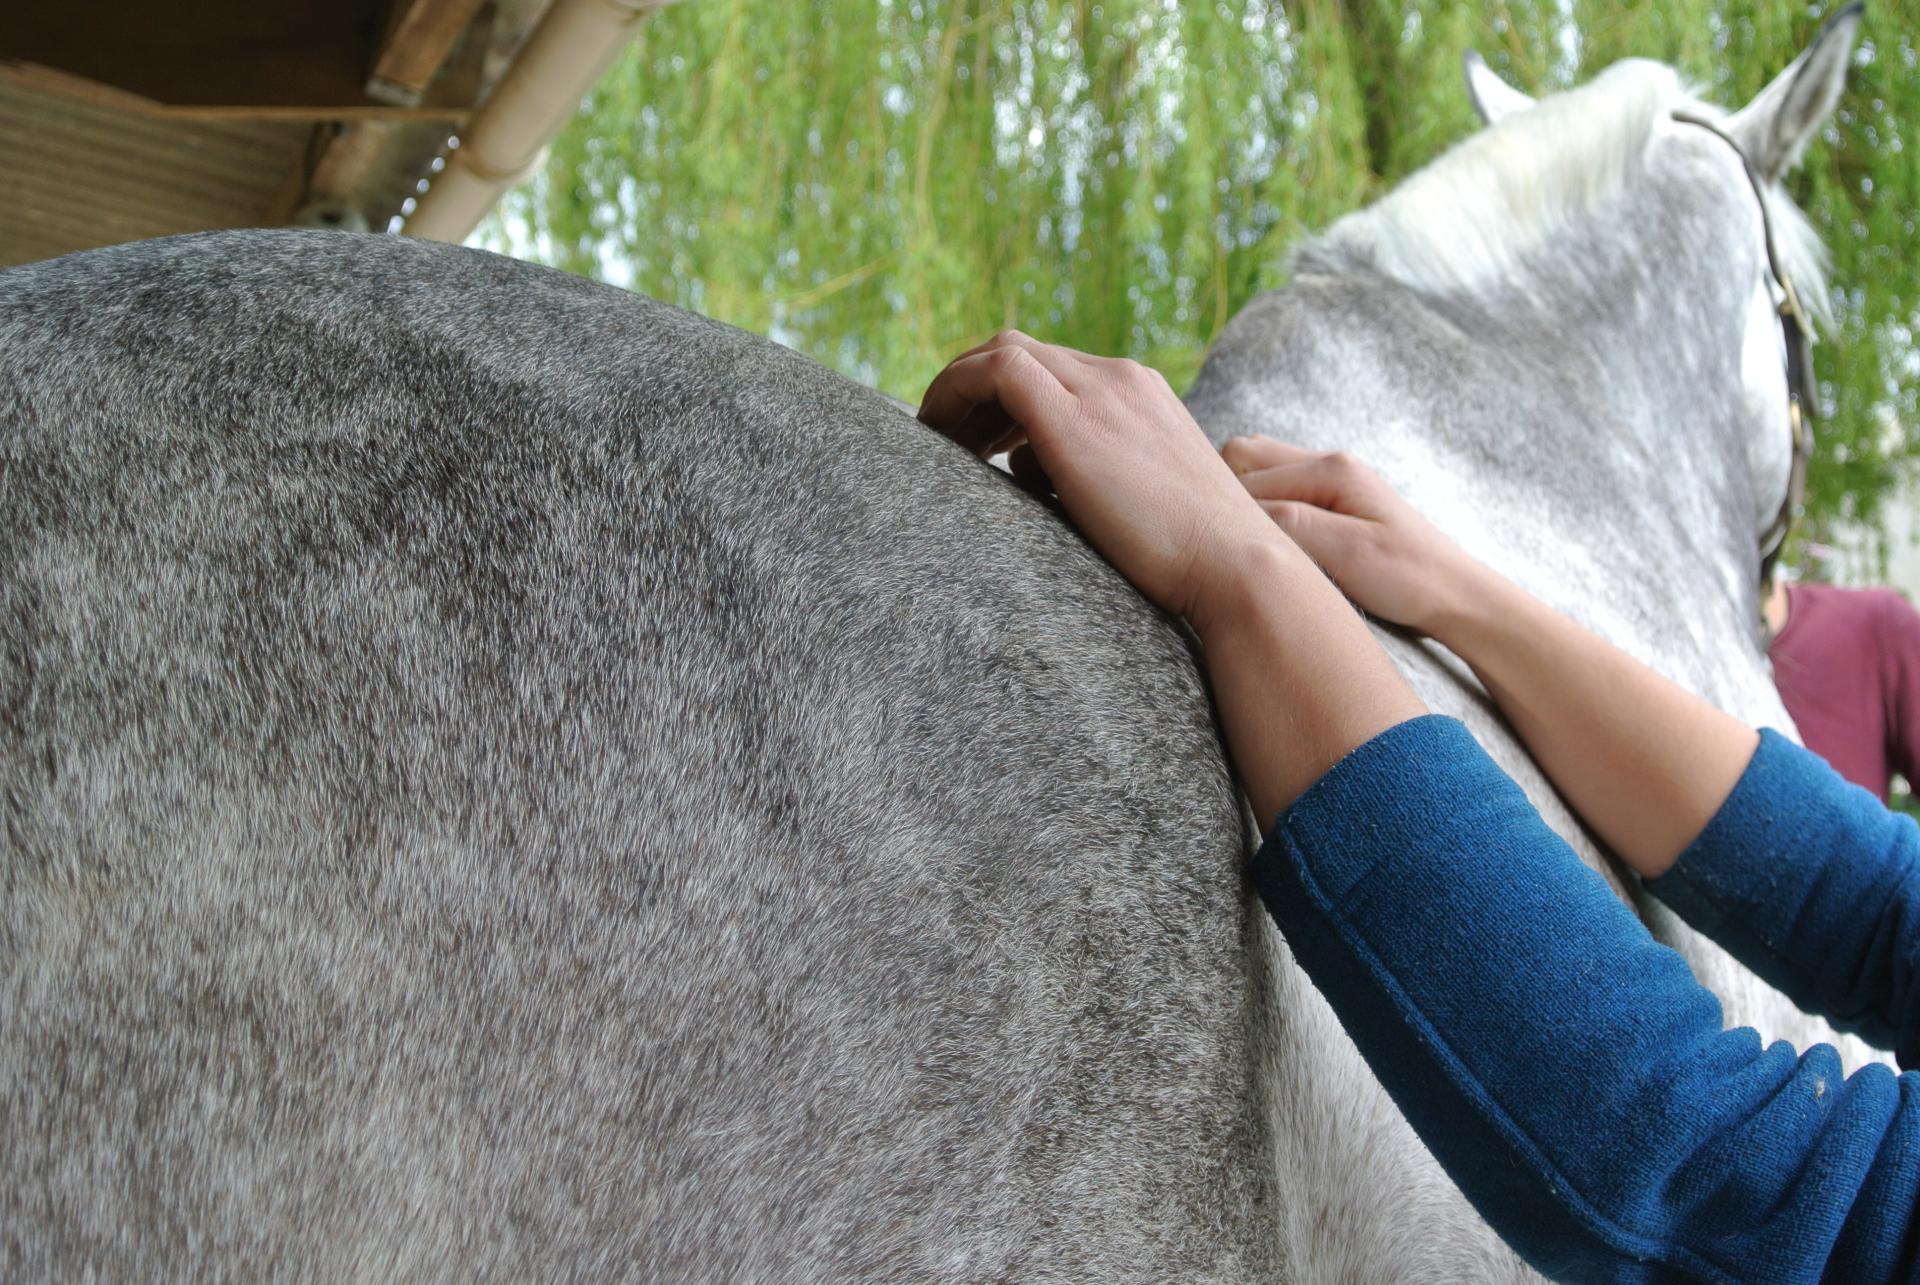 Emeline-moutiez-horsecare-algothérapie-massothérapie-shiatsu-lisieux-normandie-ile-de-france-massage-chevaux-chien-ane (39)